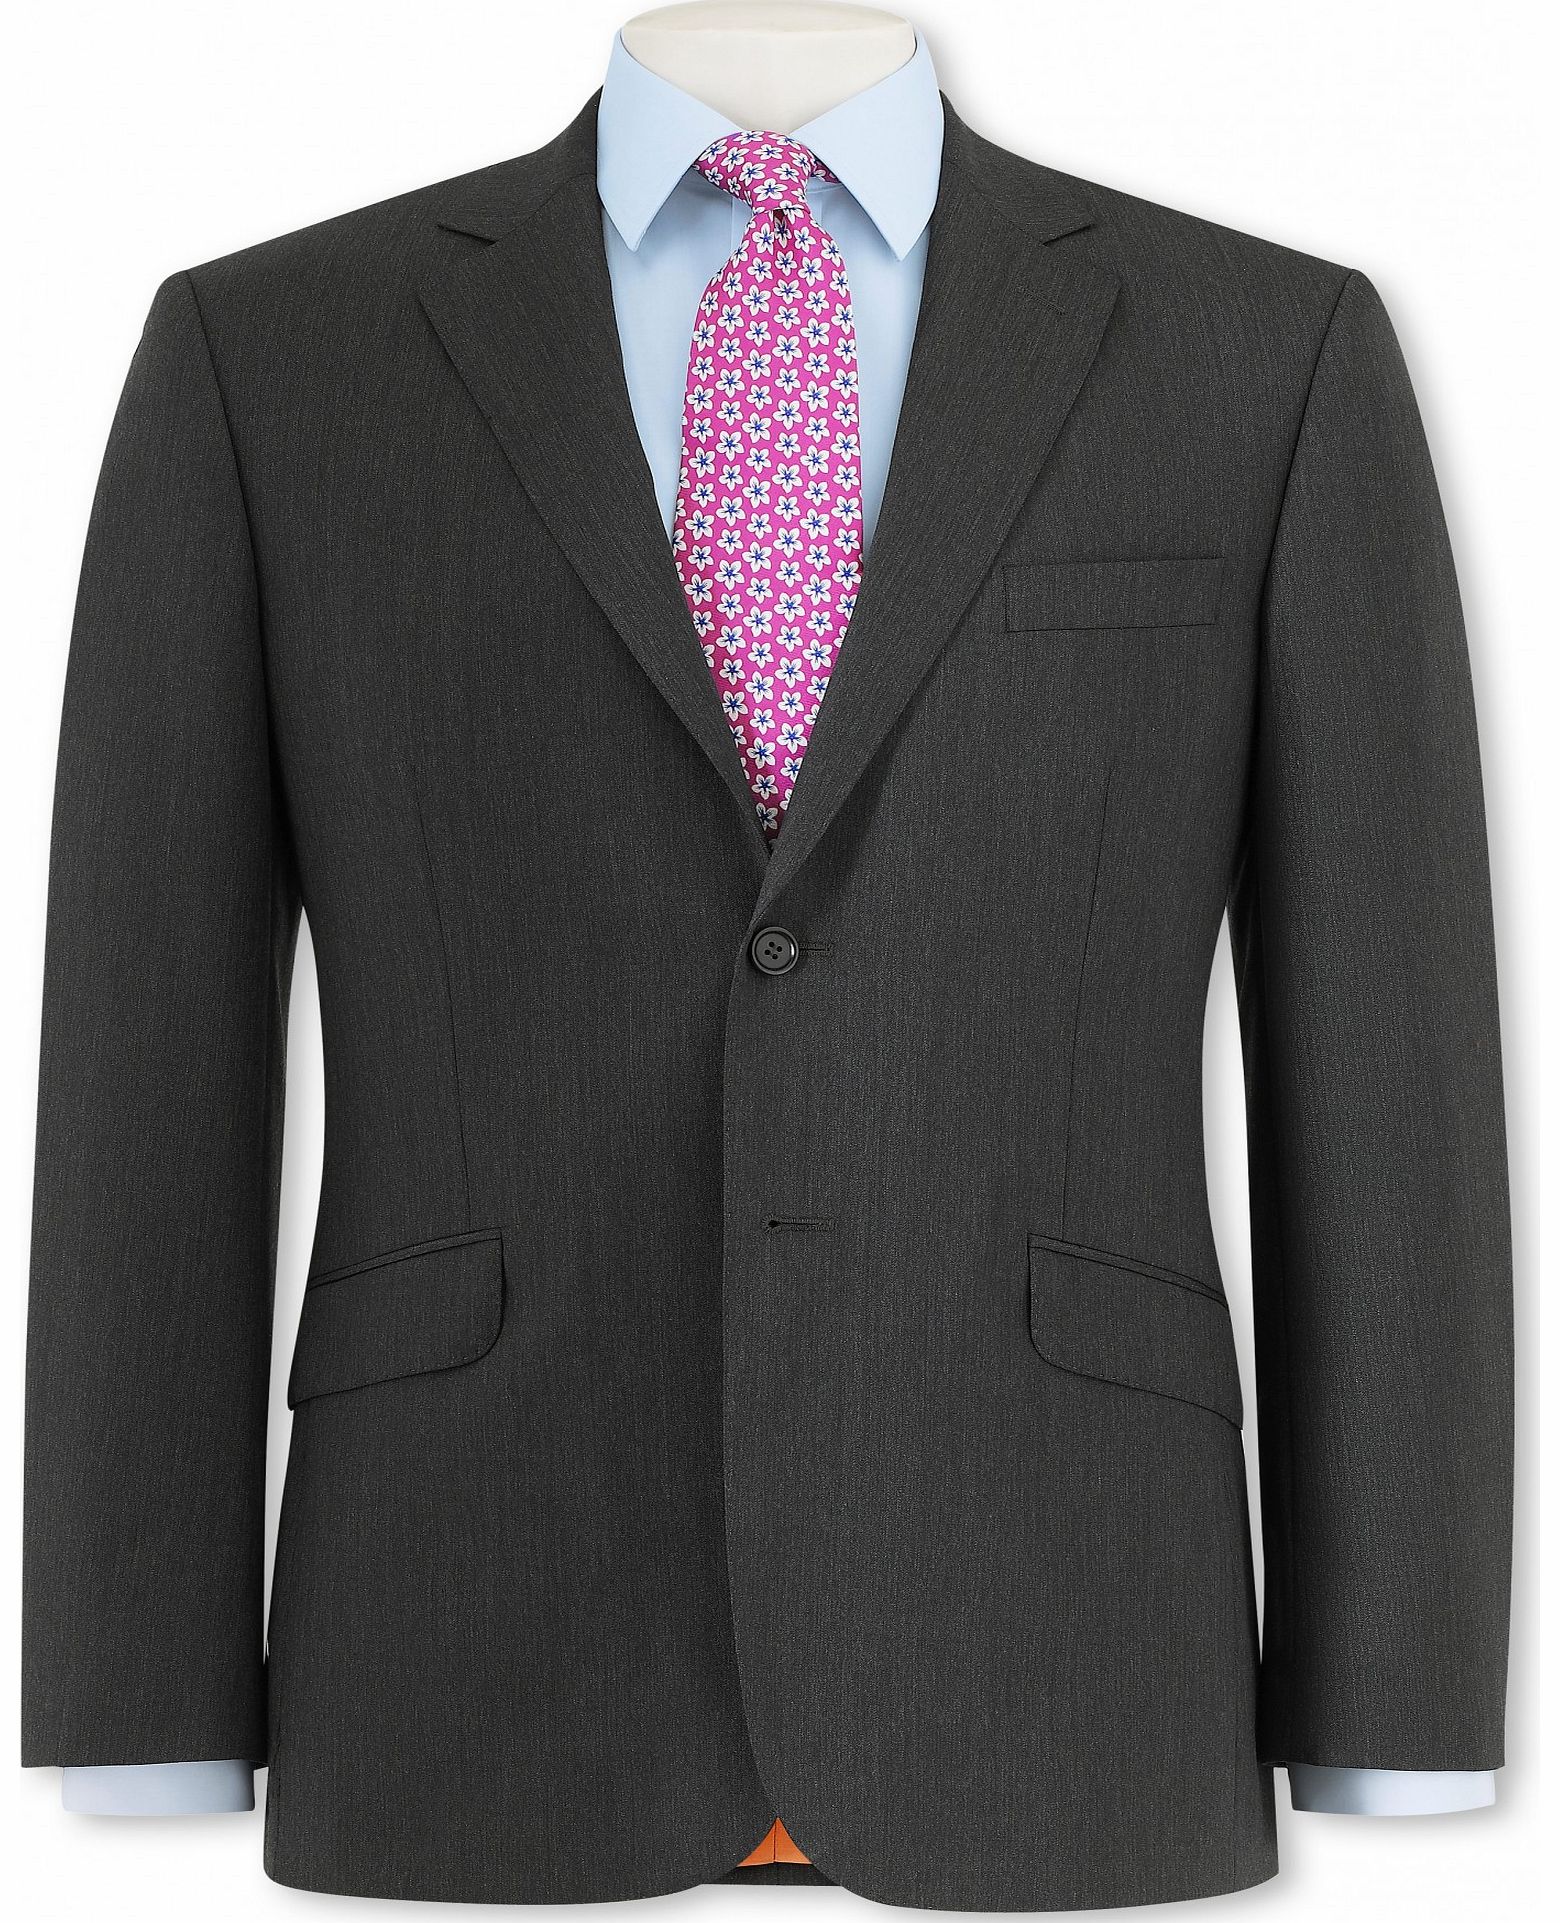 Grey Herringbone Suit Jacket 52`` Long